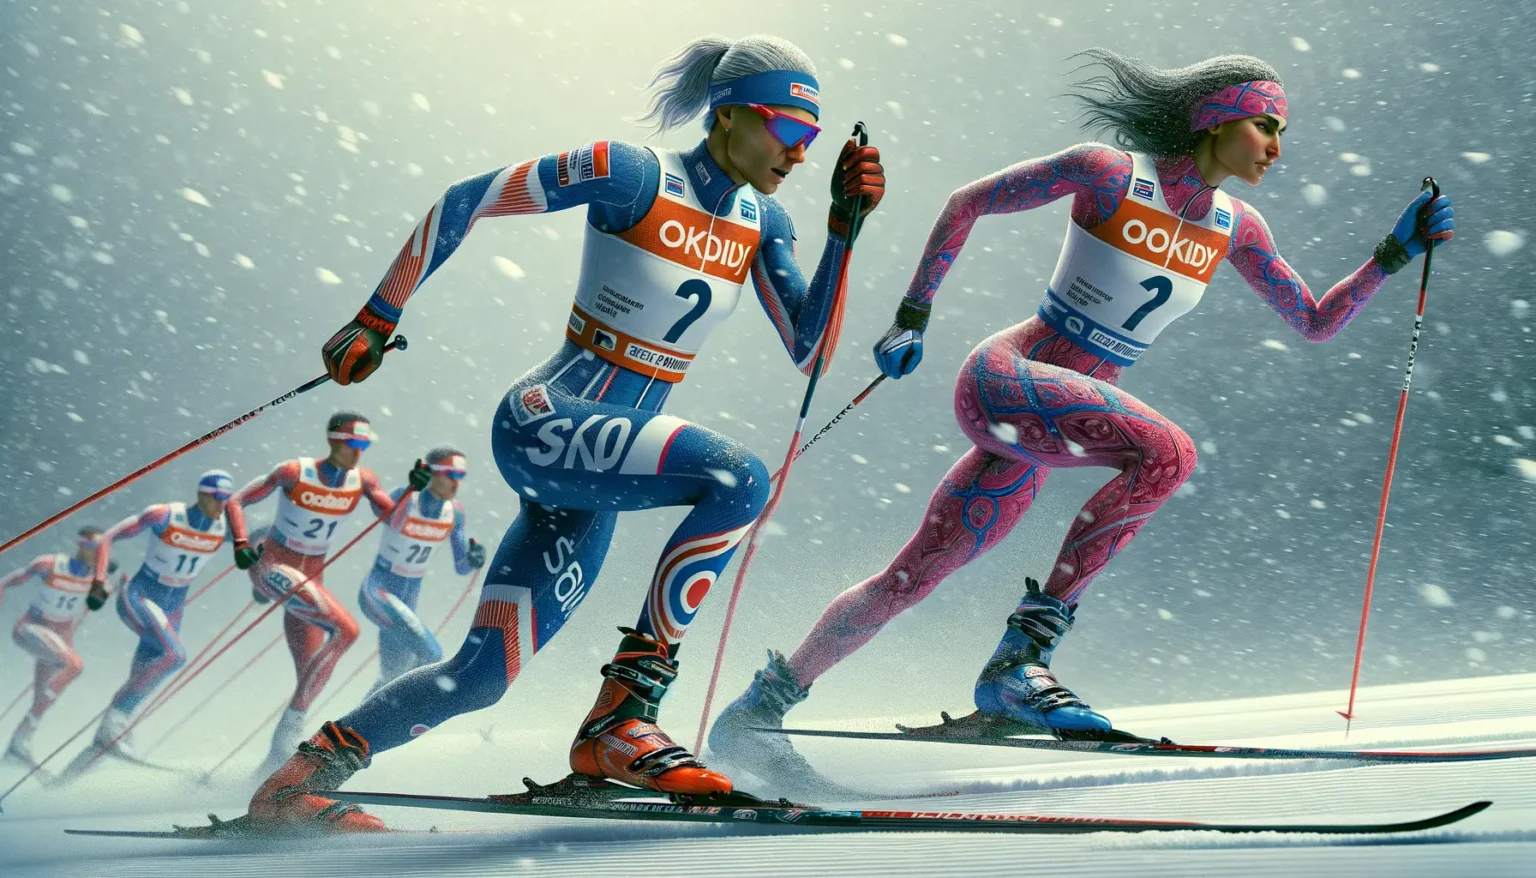 Langläufer während eines Rennens bei Schneefall, mit Fokus auf zwei Athleten in auffälligen Rennanzügen, die dynamisch auf ihren Ski gleiten.